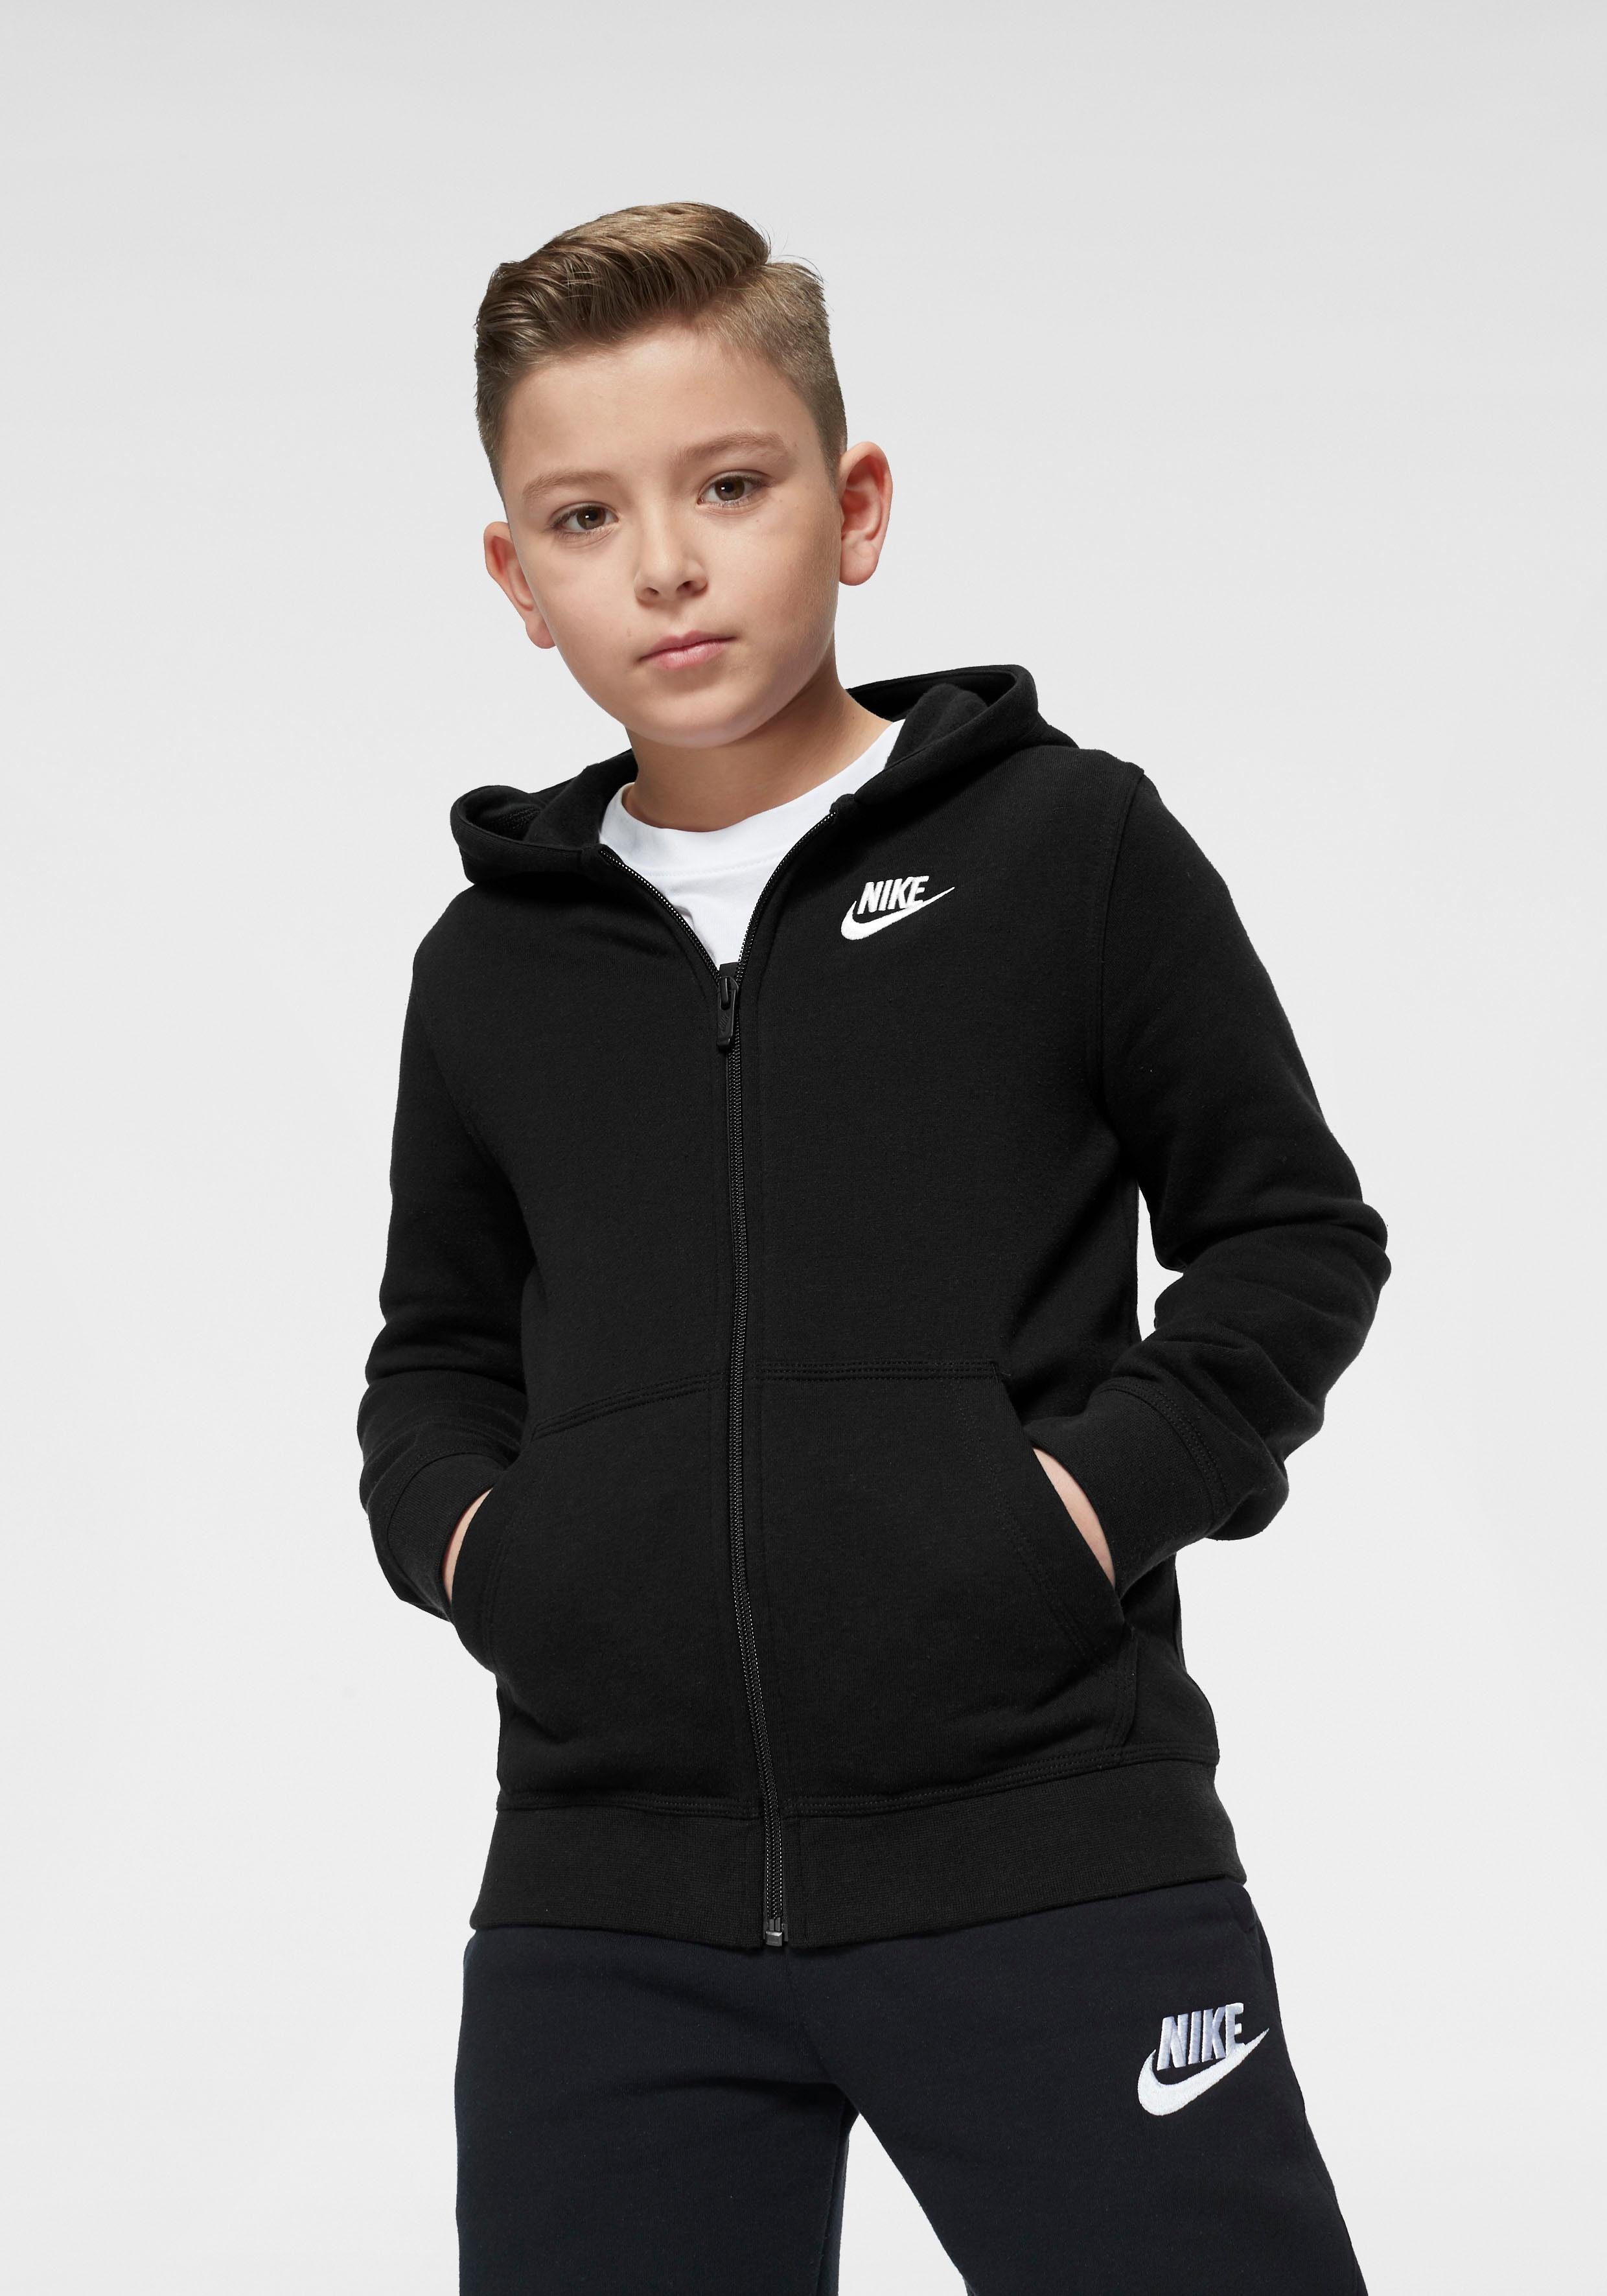 Nike Jungen Sportbekleidung online kaufen | OTTO